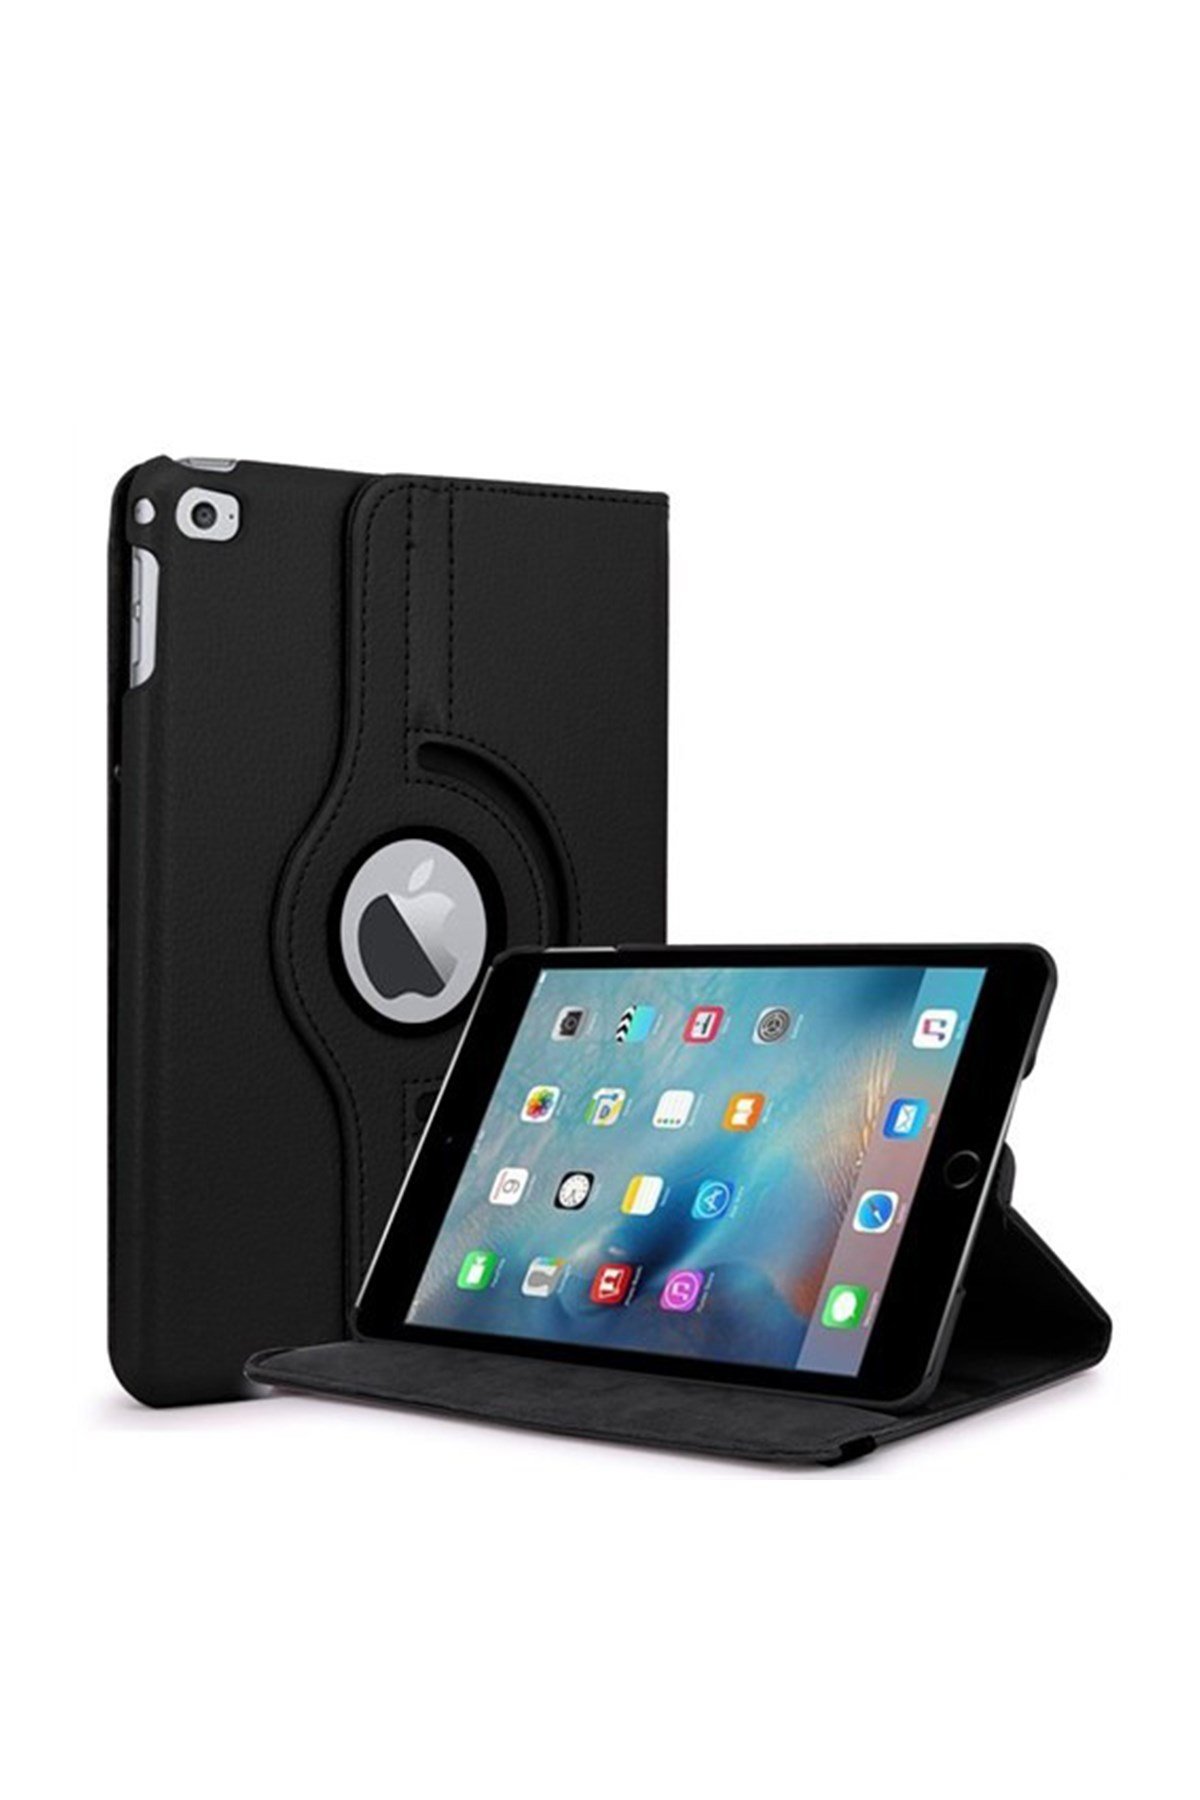 iPad Mini 4 7.9 inç Dönerli Tablet Kılıfı I Esepetim.com